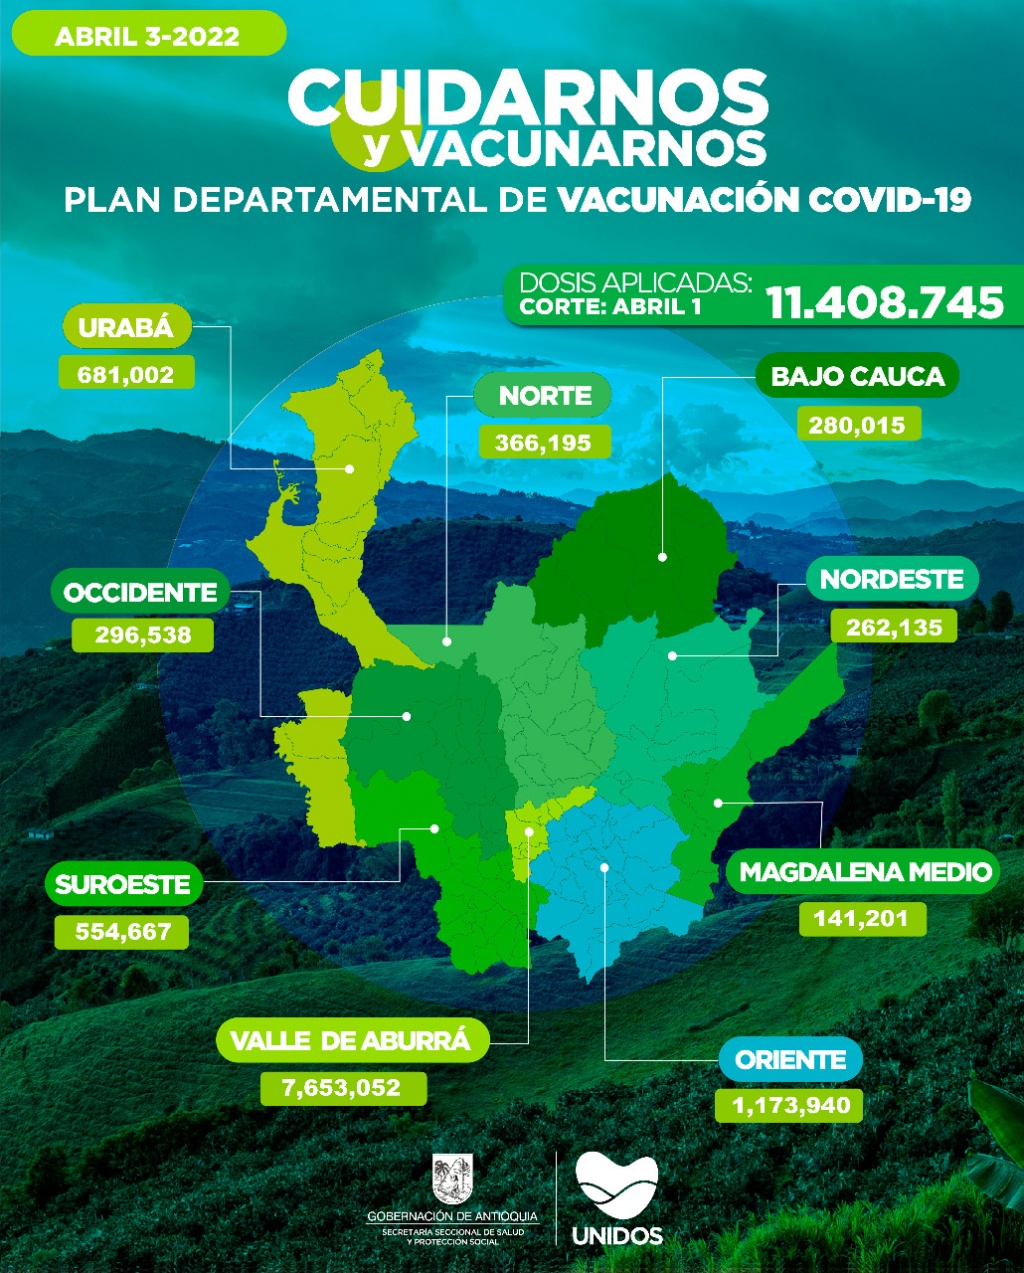 11.051 dosis aplicadas, Antioquia llegó el 1 de abril a 11.408.745 vacunados contra COVID19